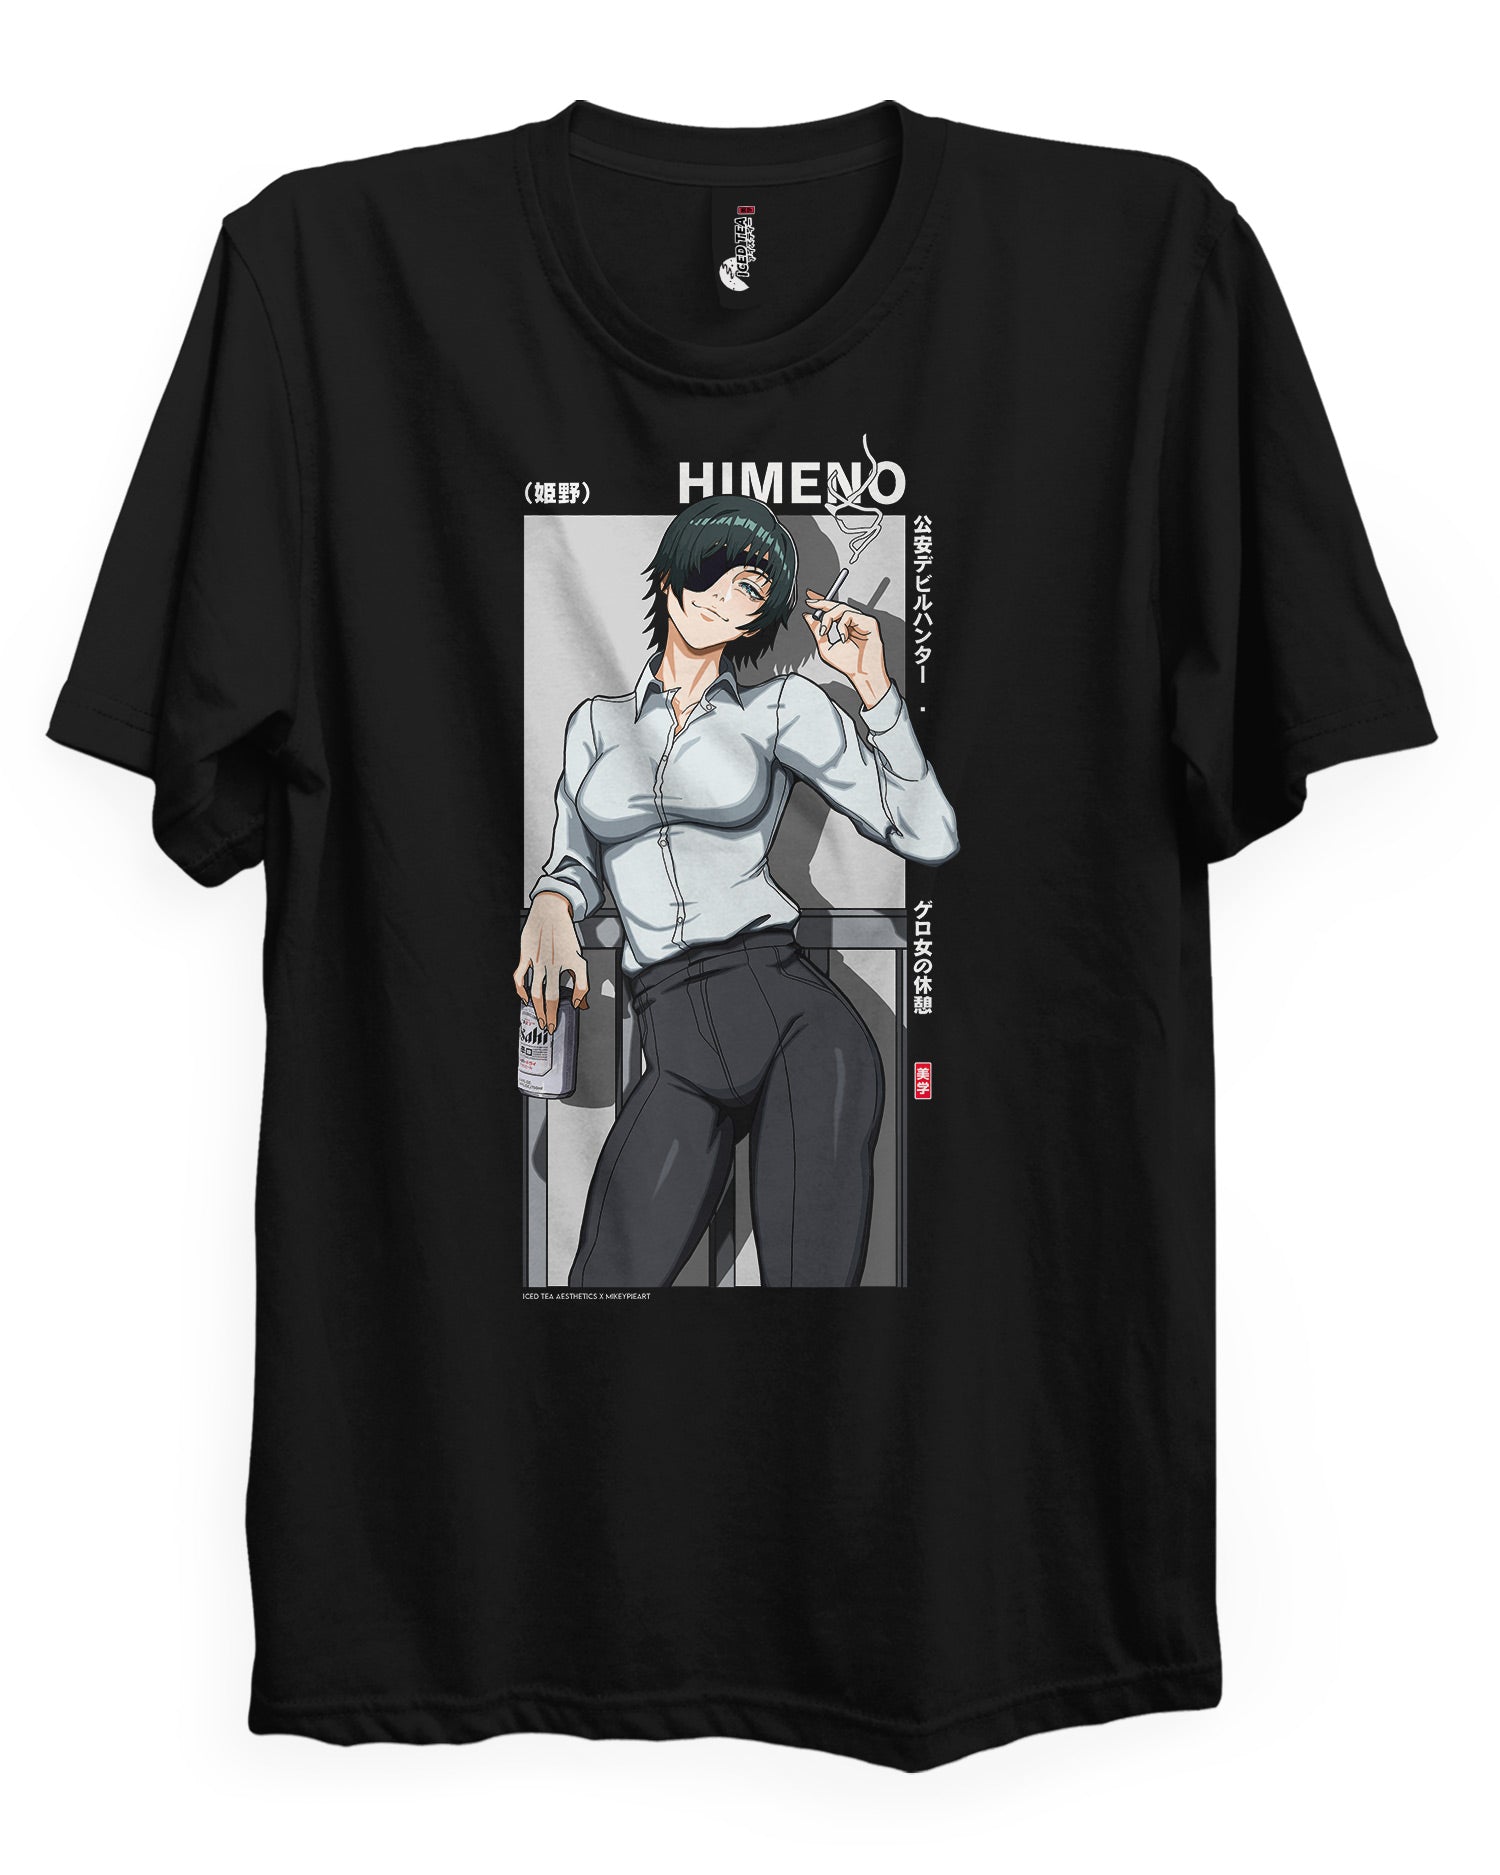 HIMENO (Easy Revenge) - T-Shirt